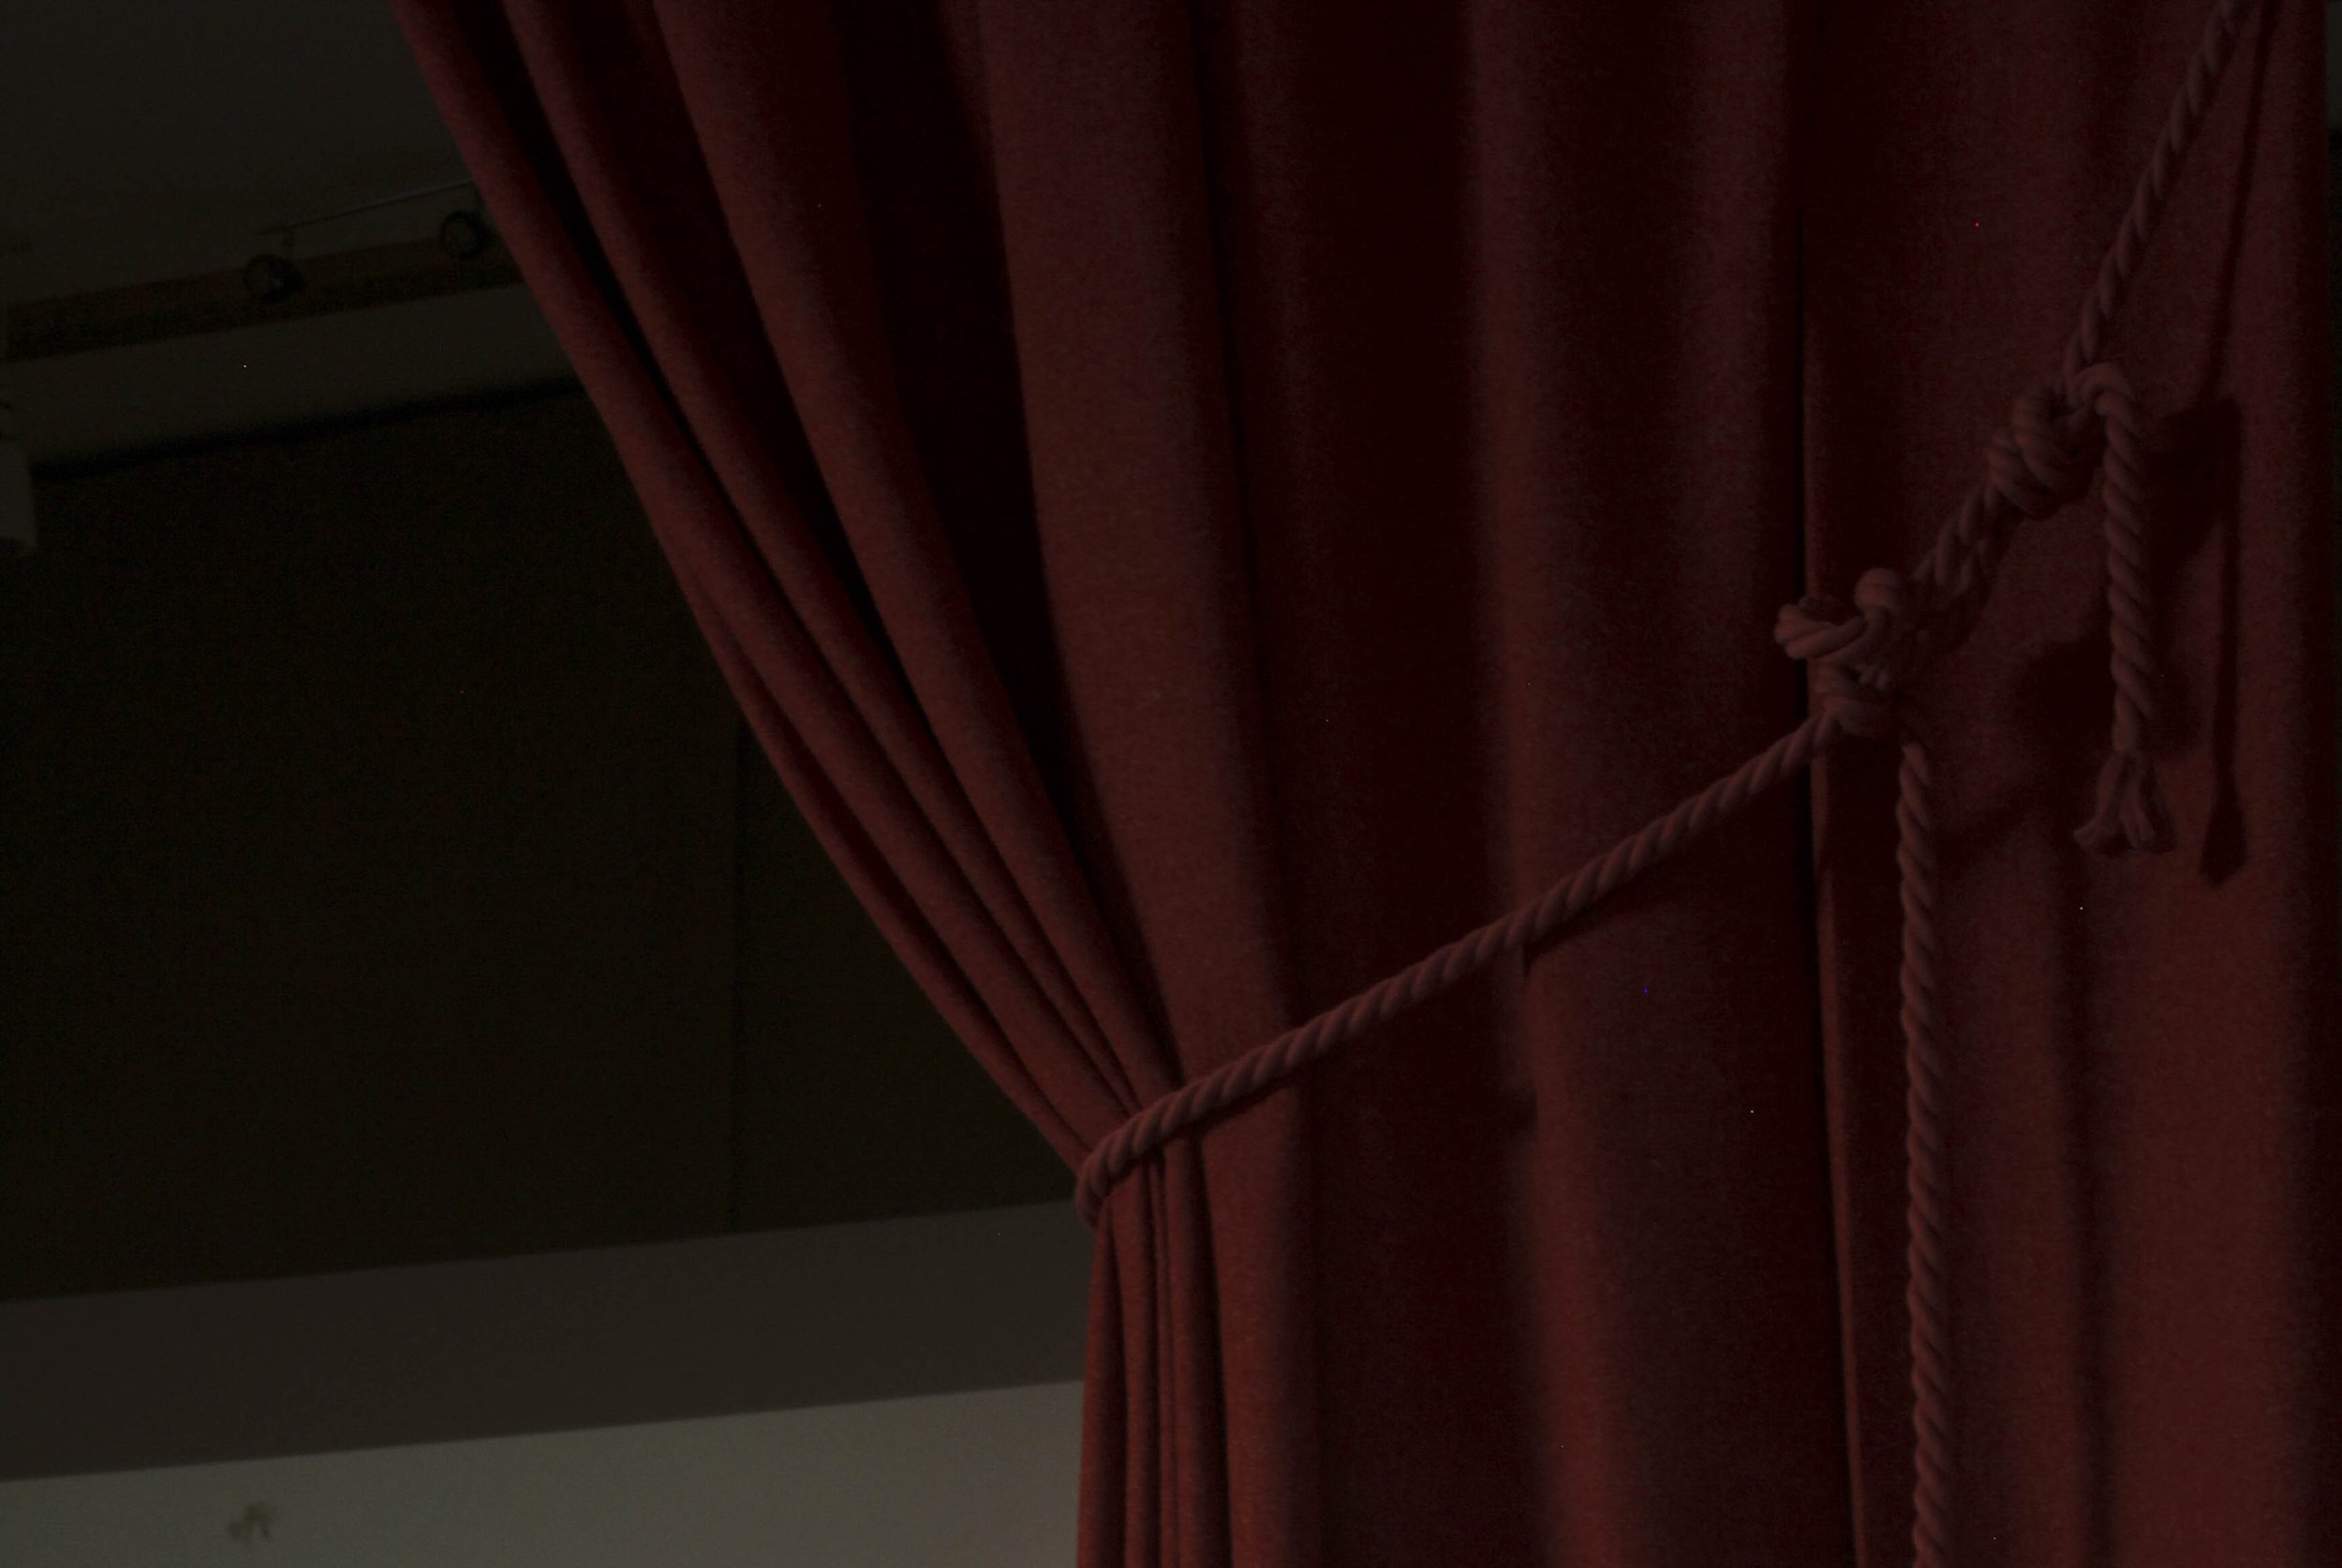 Camira Fabrics Hemp Curtain and Brian Turner Pink Rope.